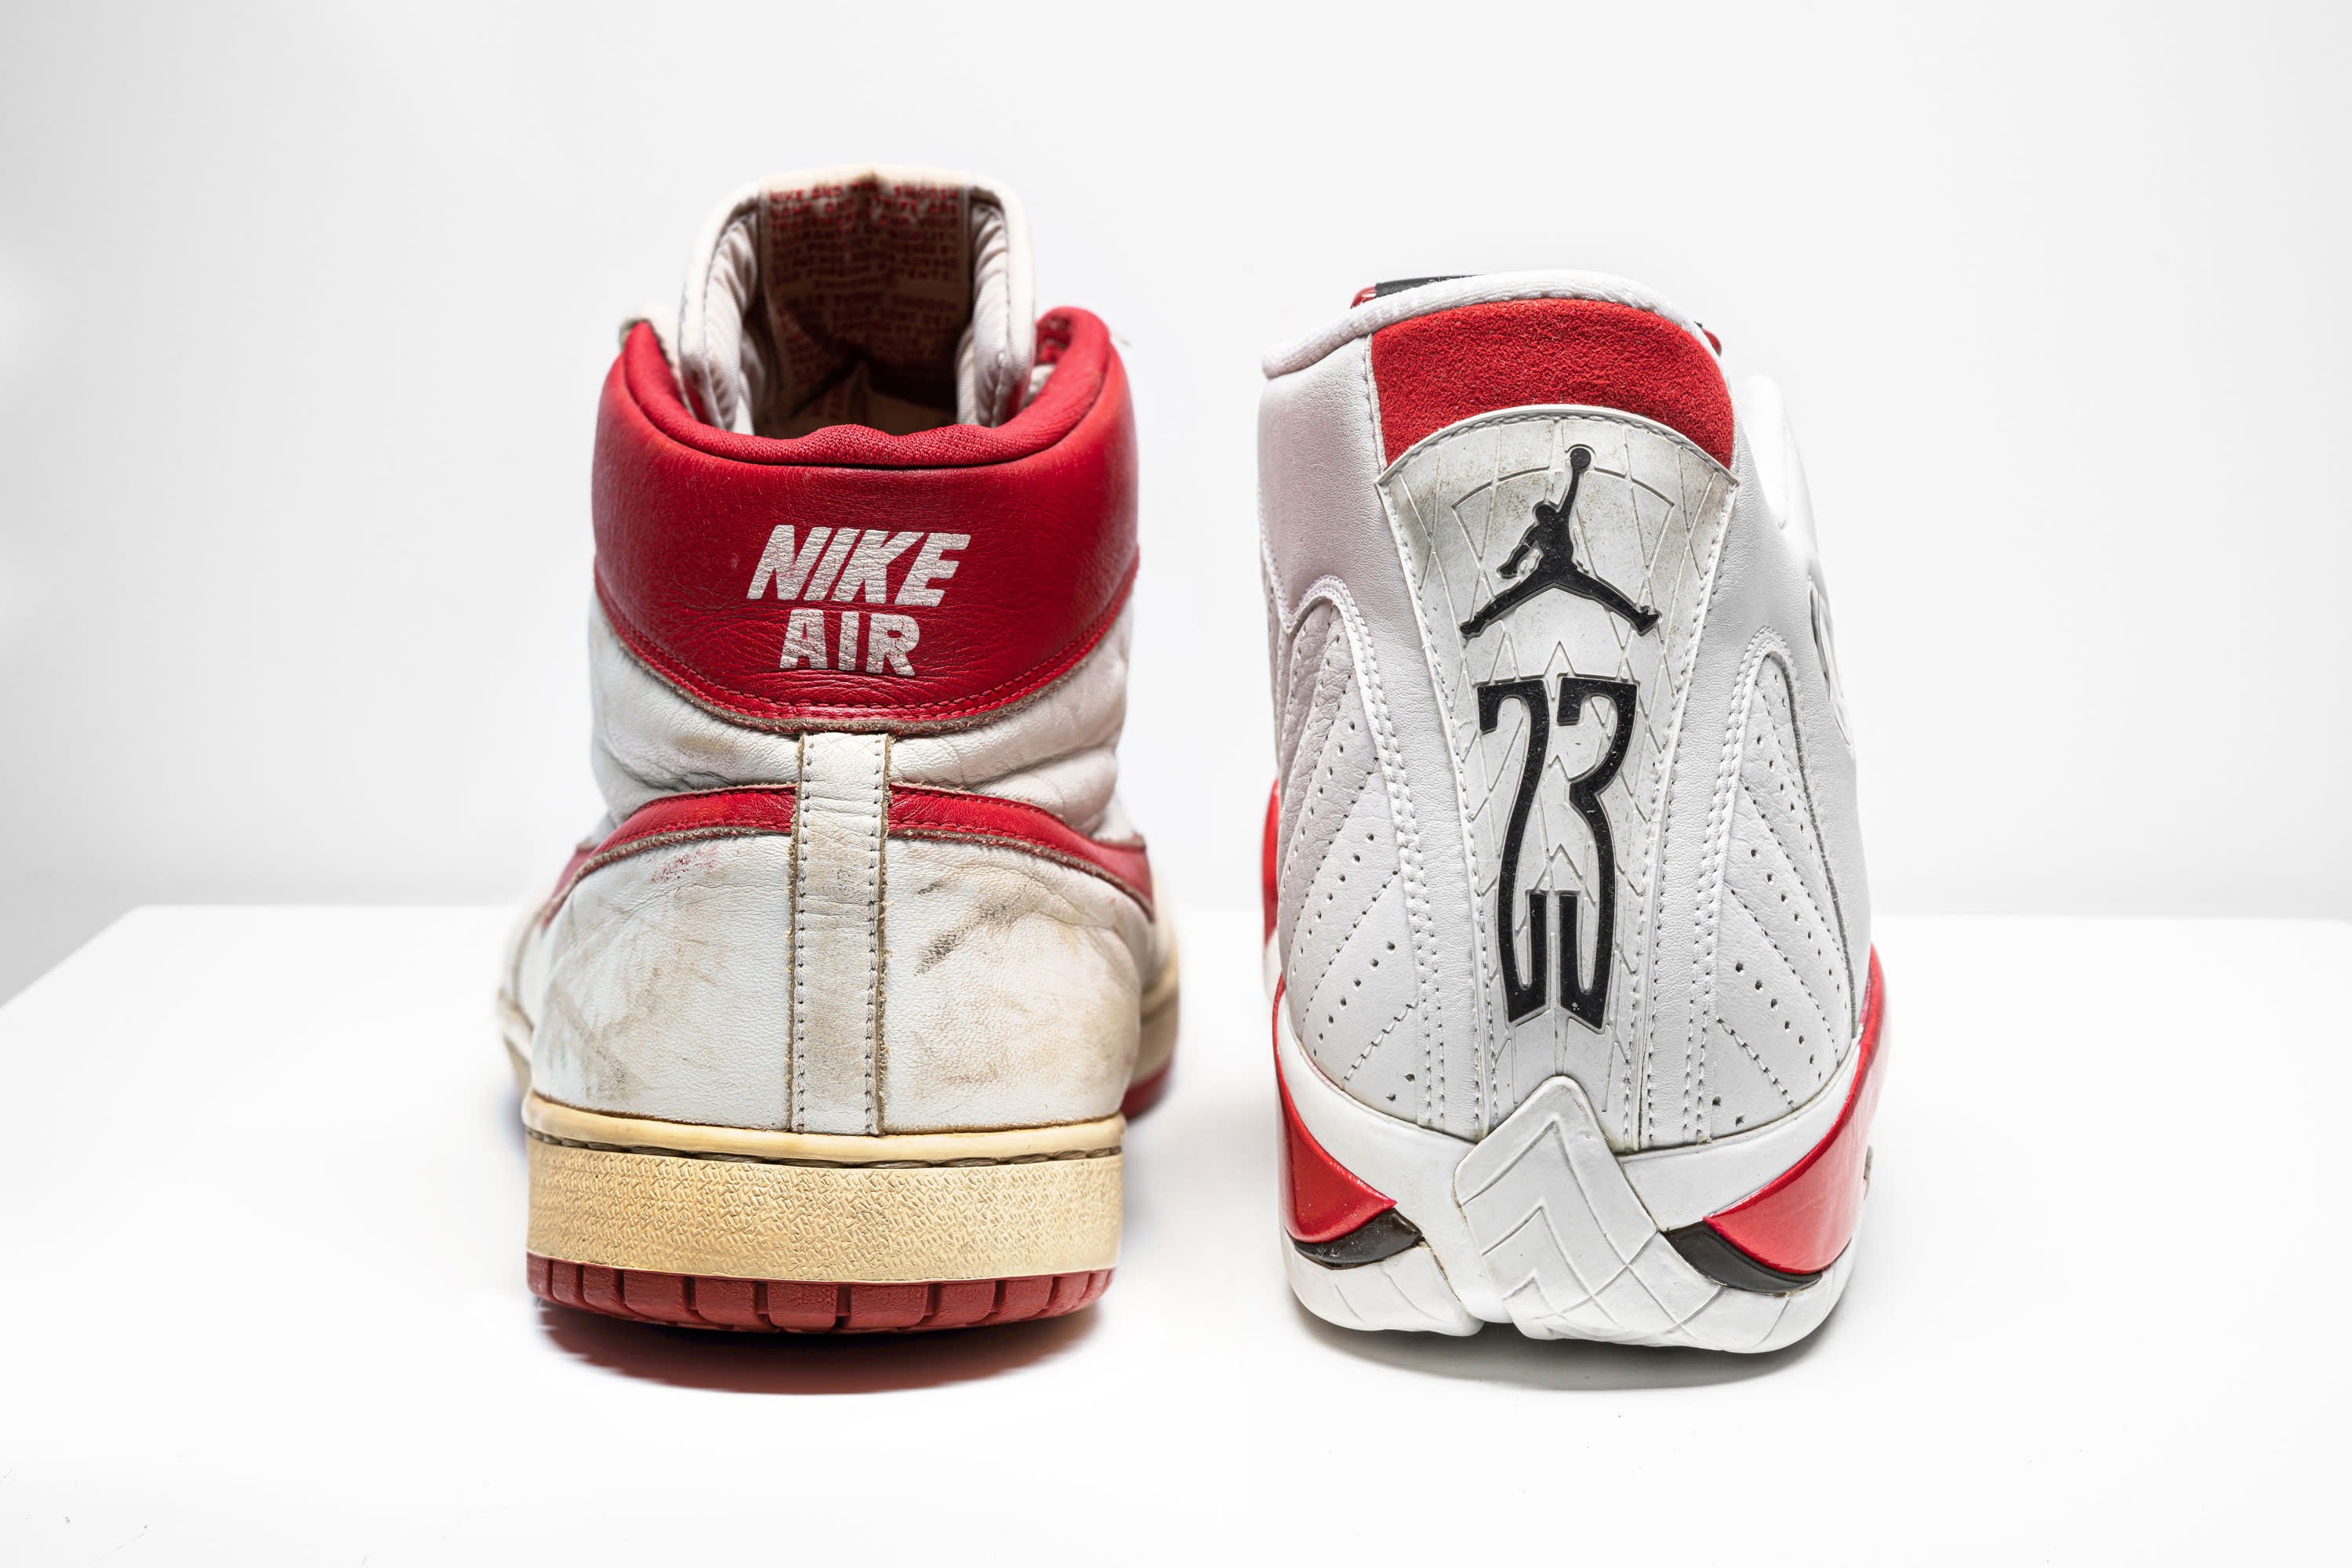 the new michael jordan sneakers